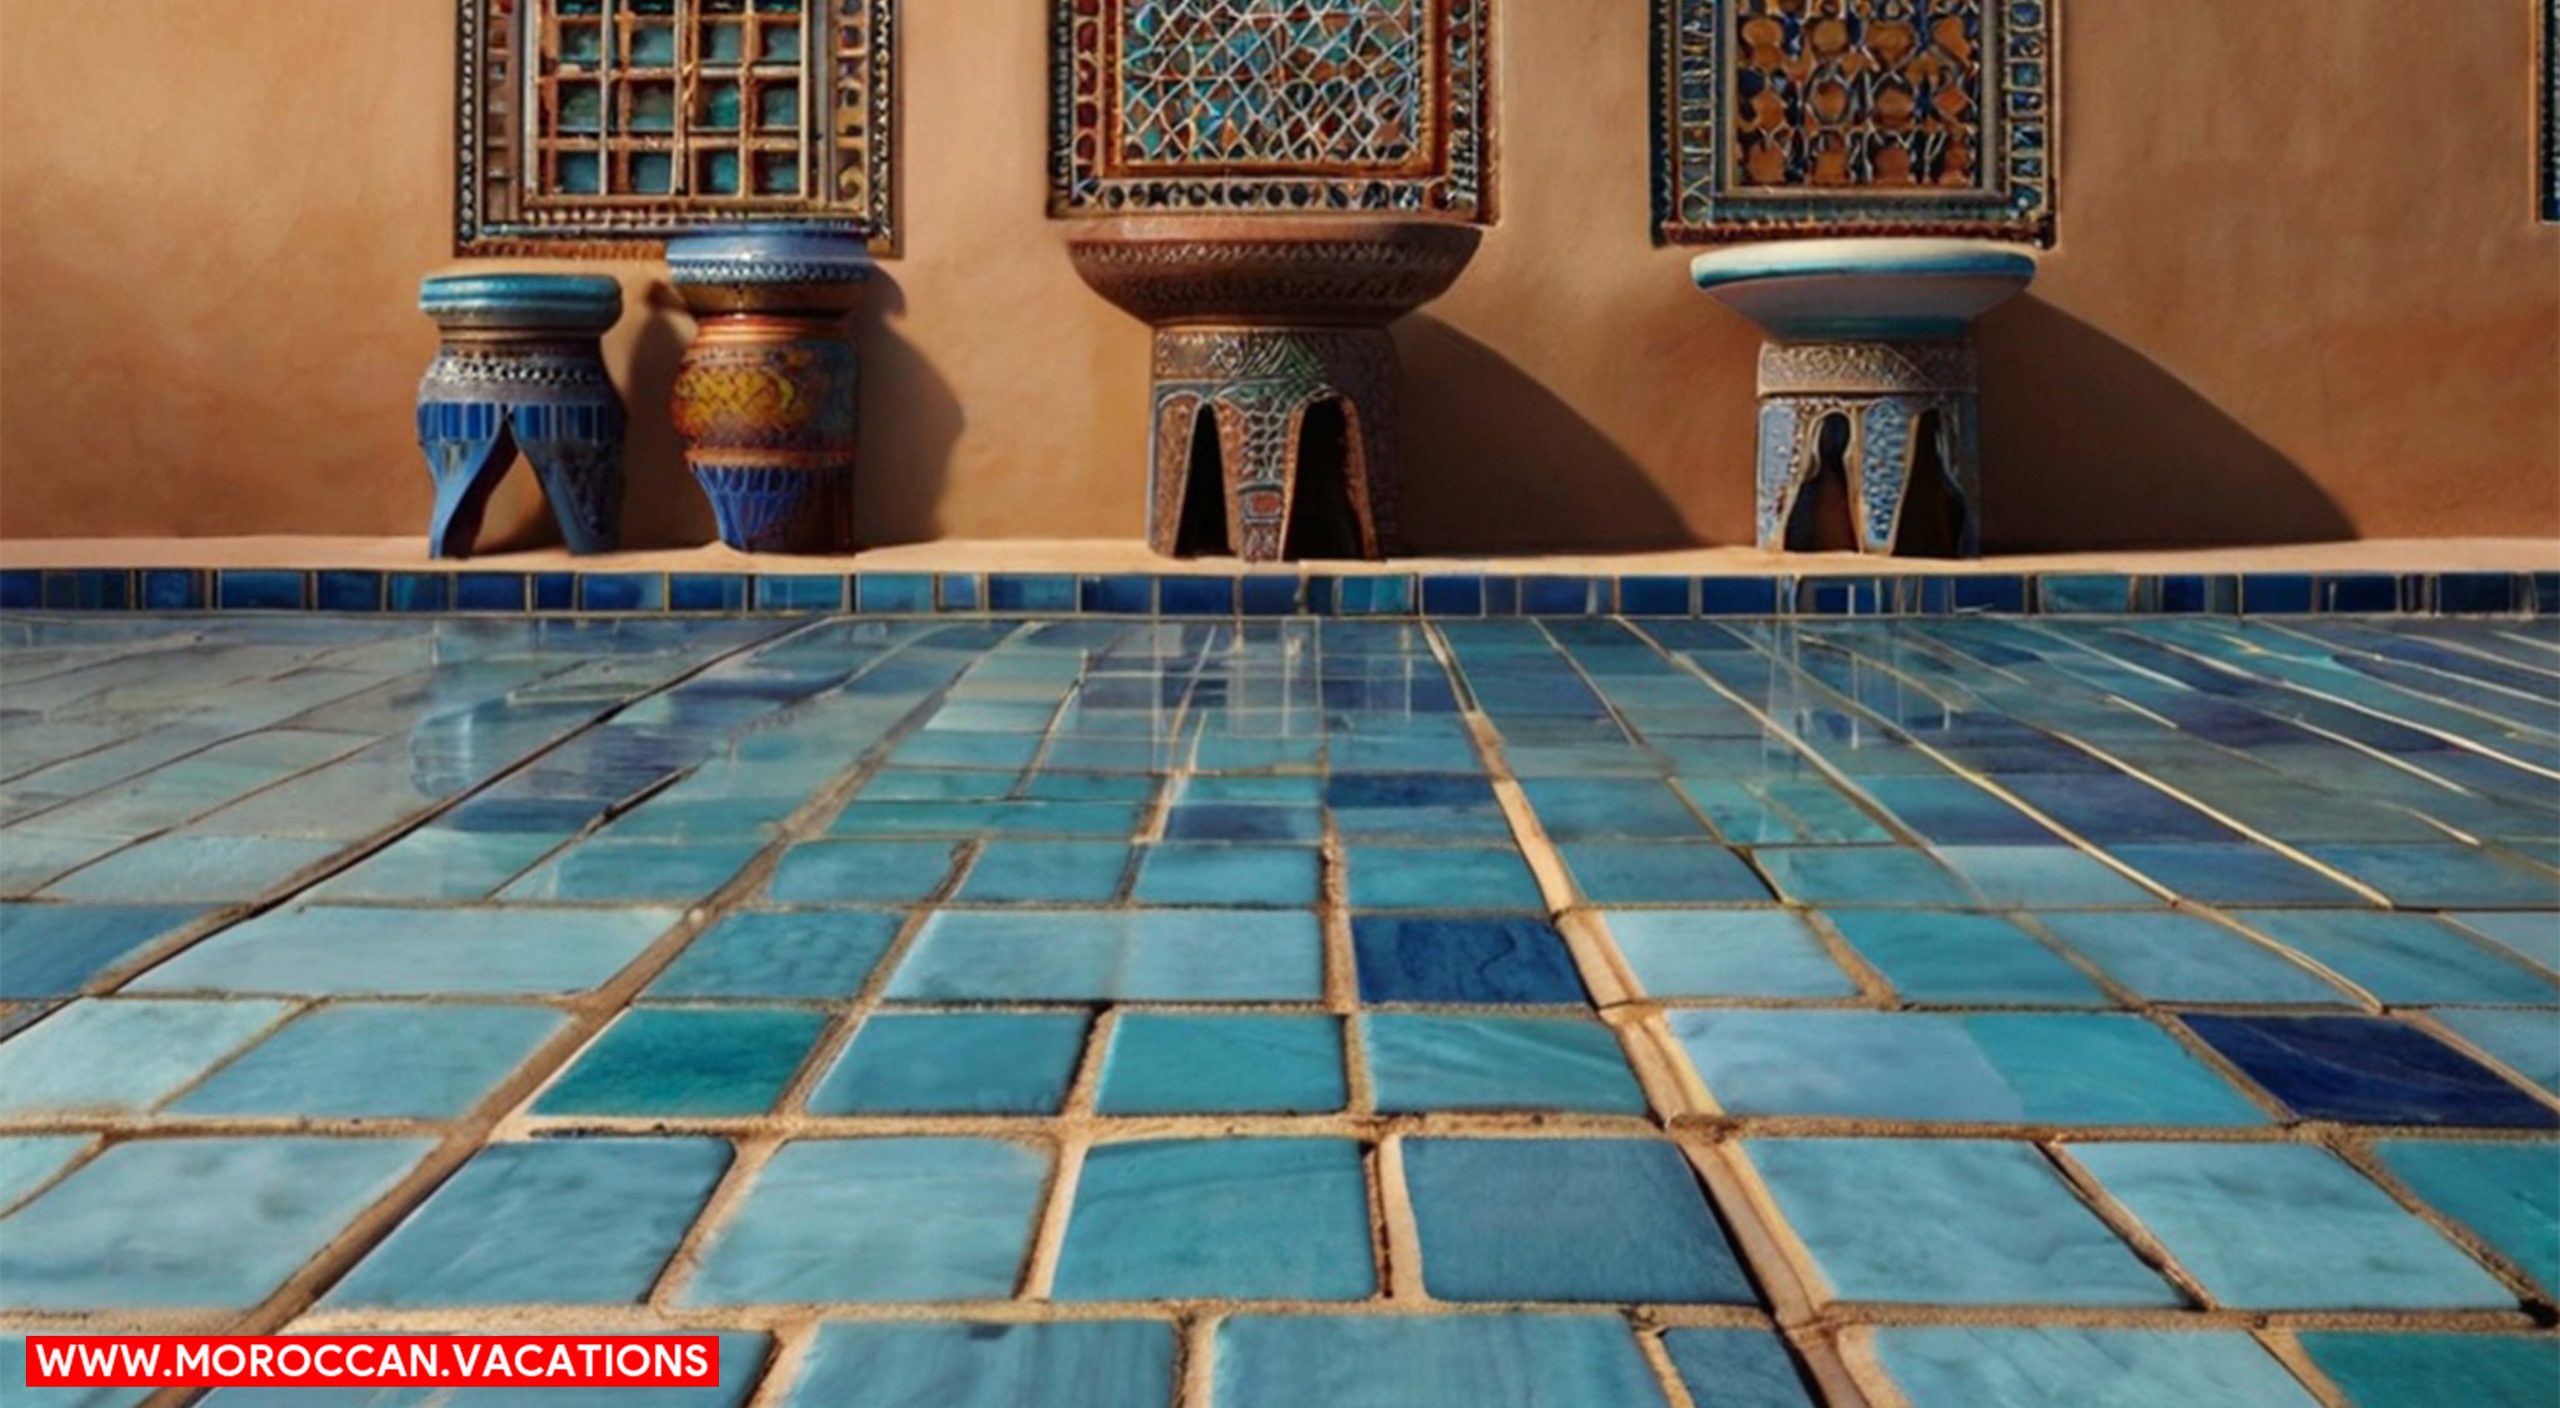 An image of Morocco tiles.